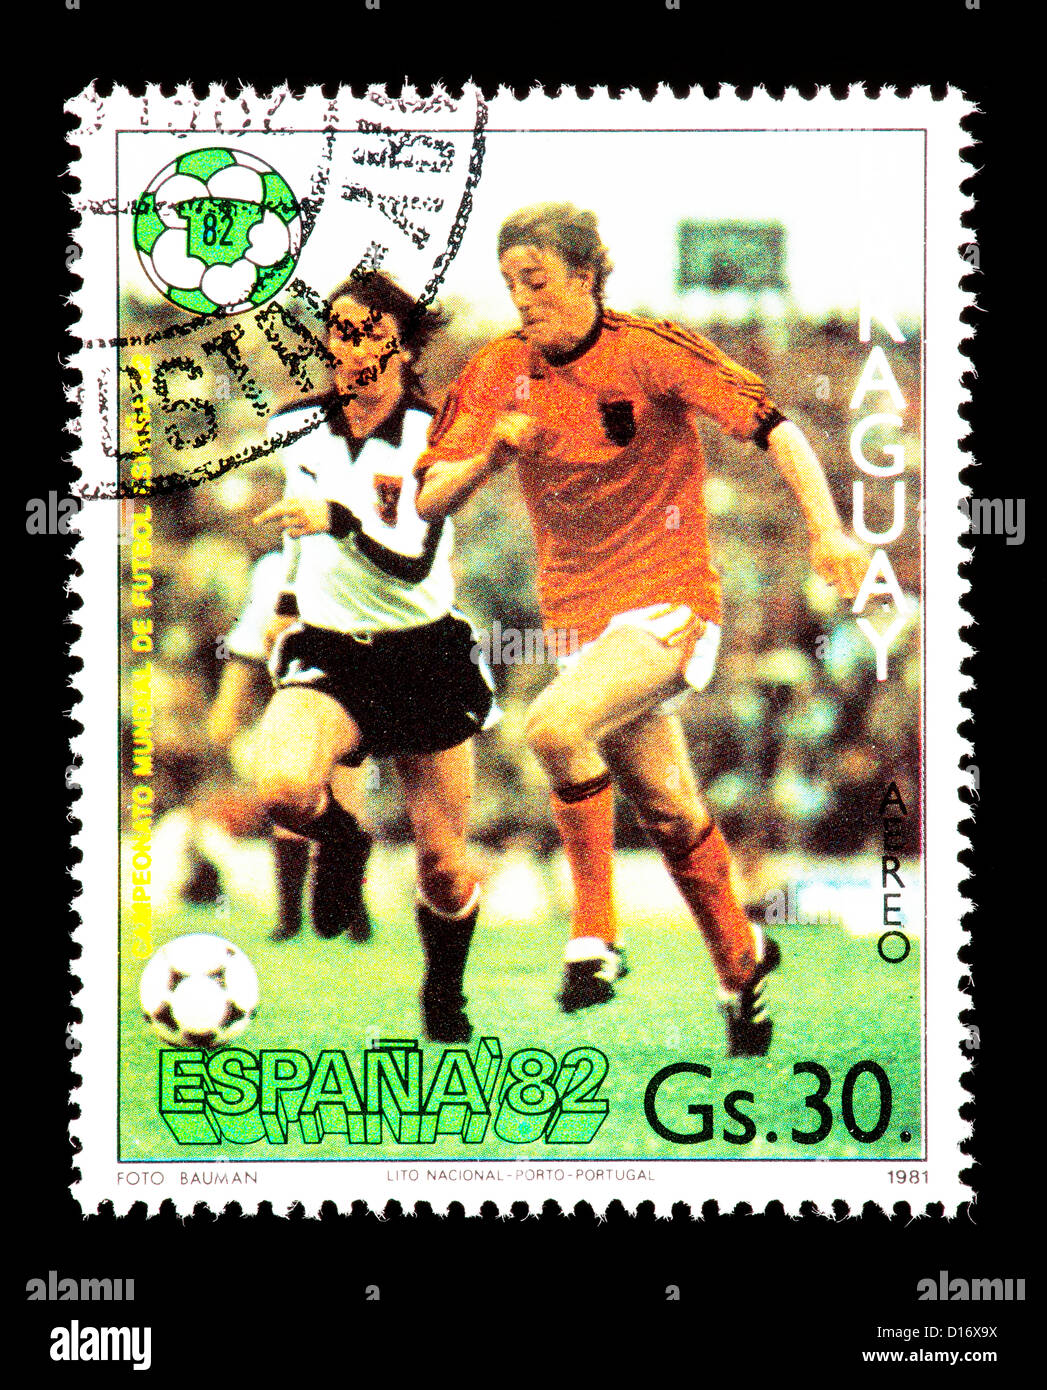 Timbre du Paraguay représentant des joueurs de football, émis pour la Coupe du Monde de football 1982 en Espagne. Banque D'Images